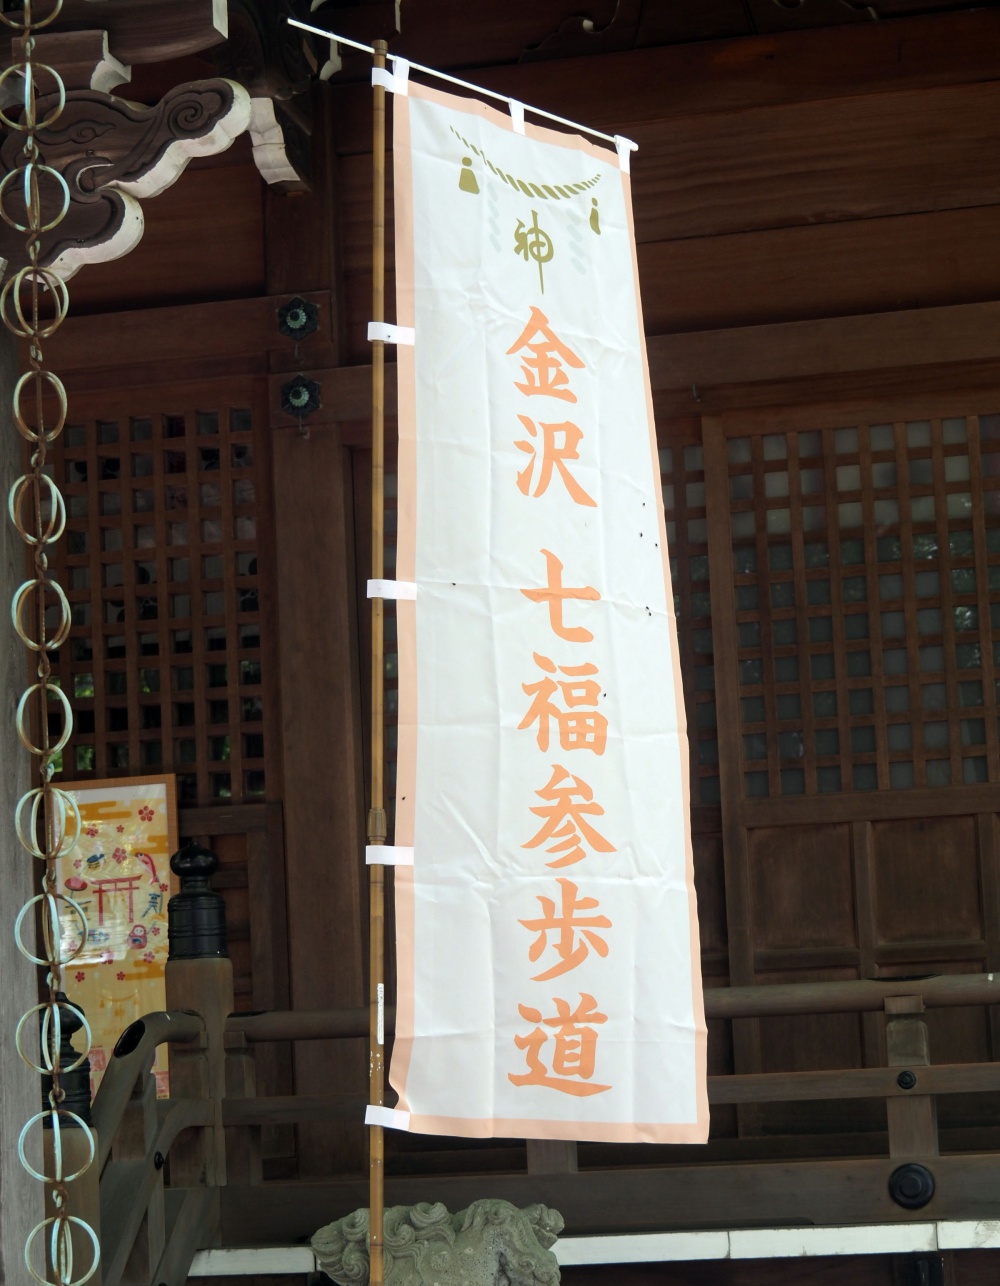 「金沢七福参歩道」の幟旗